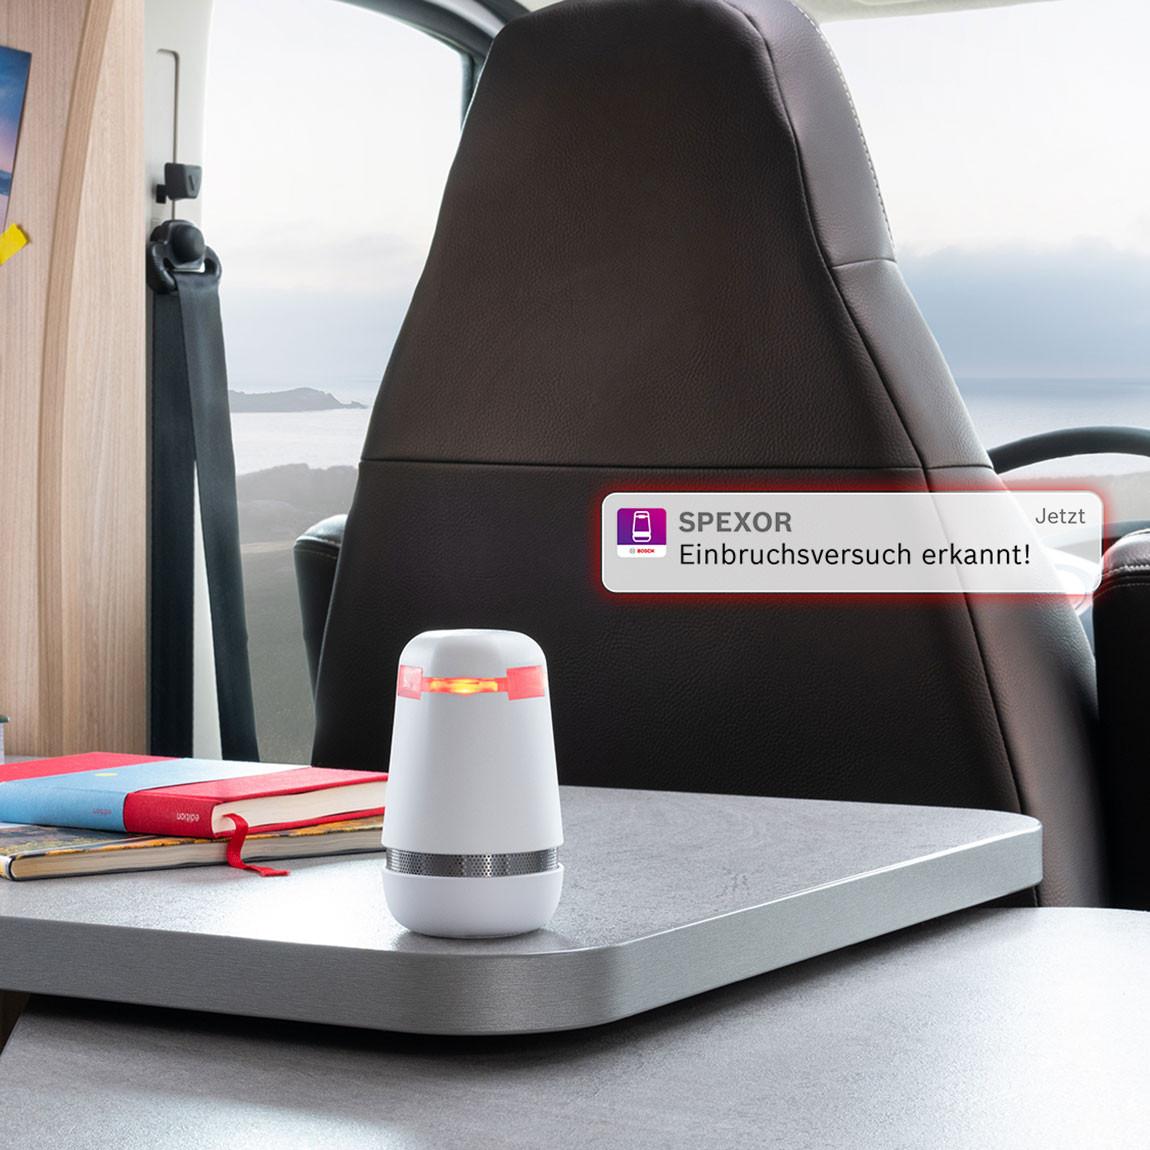 Bosch spexor - Mobiles Alarmgerät mit integrierter eSIM-Karte Alarm in Wohnwagen